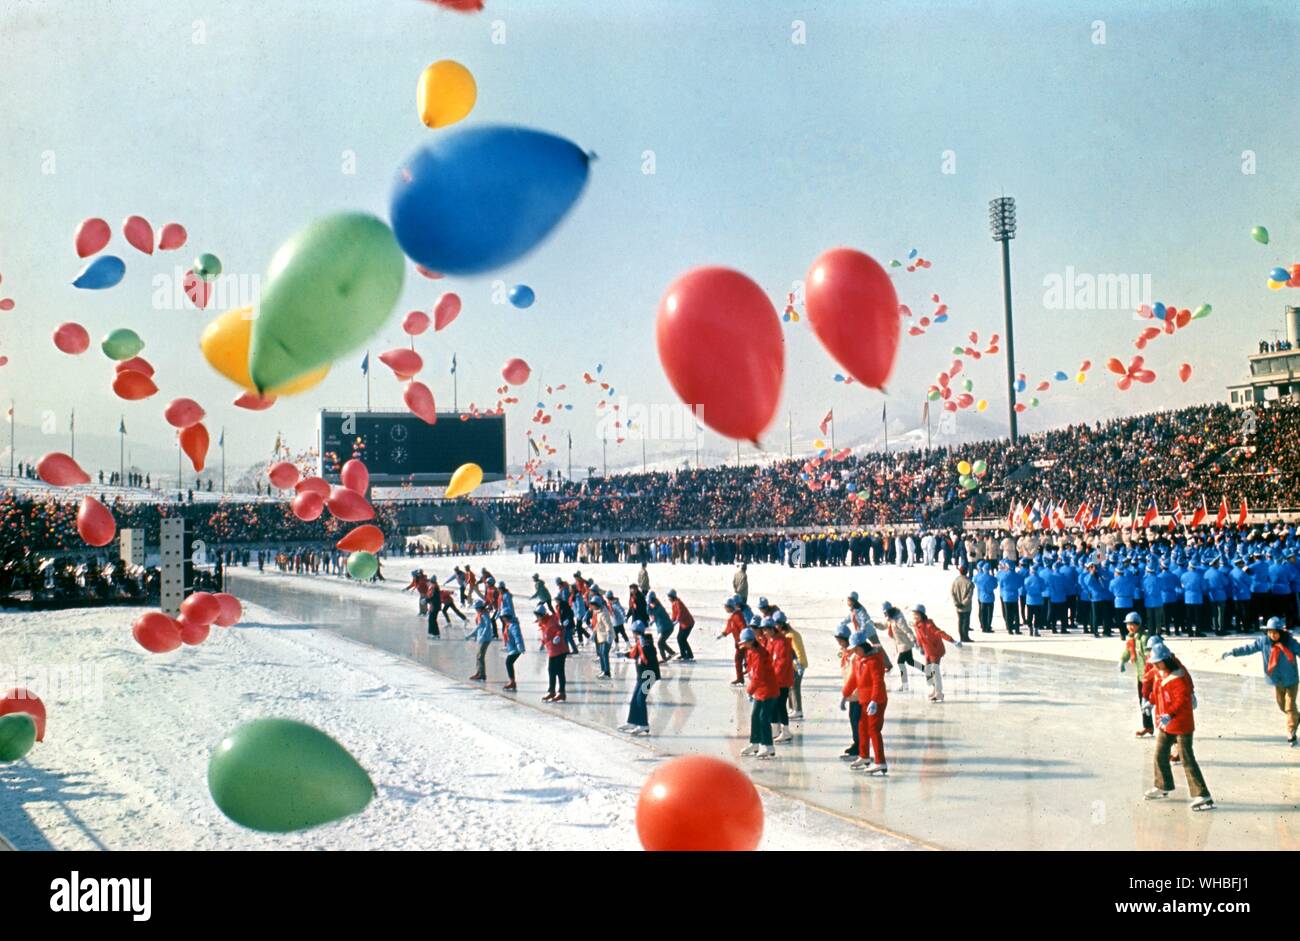 Winter Olympics parade. Stock Photo